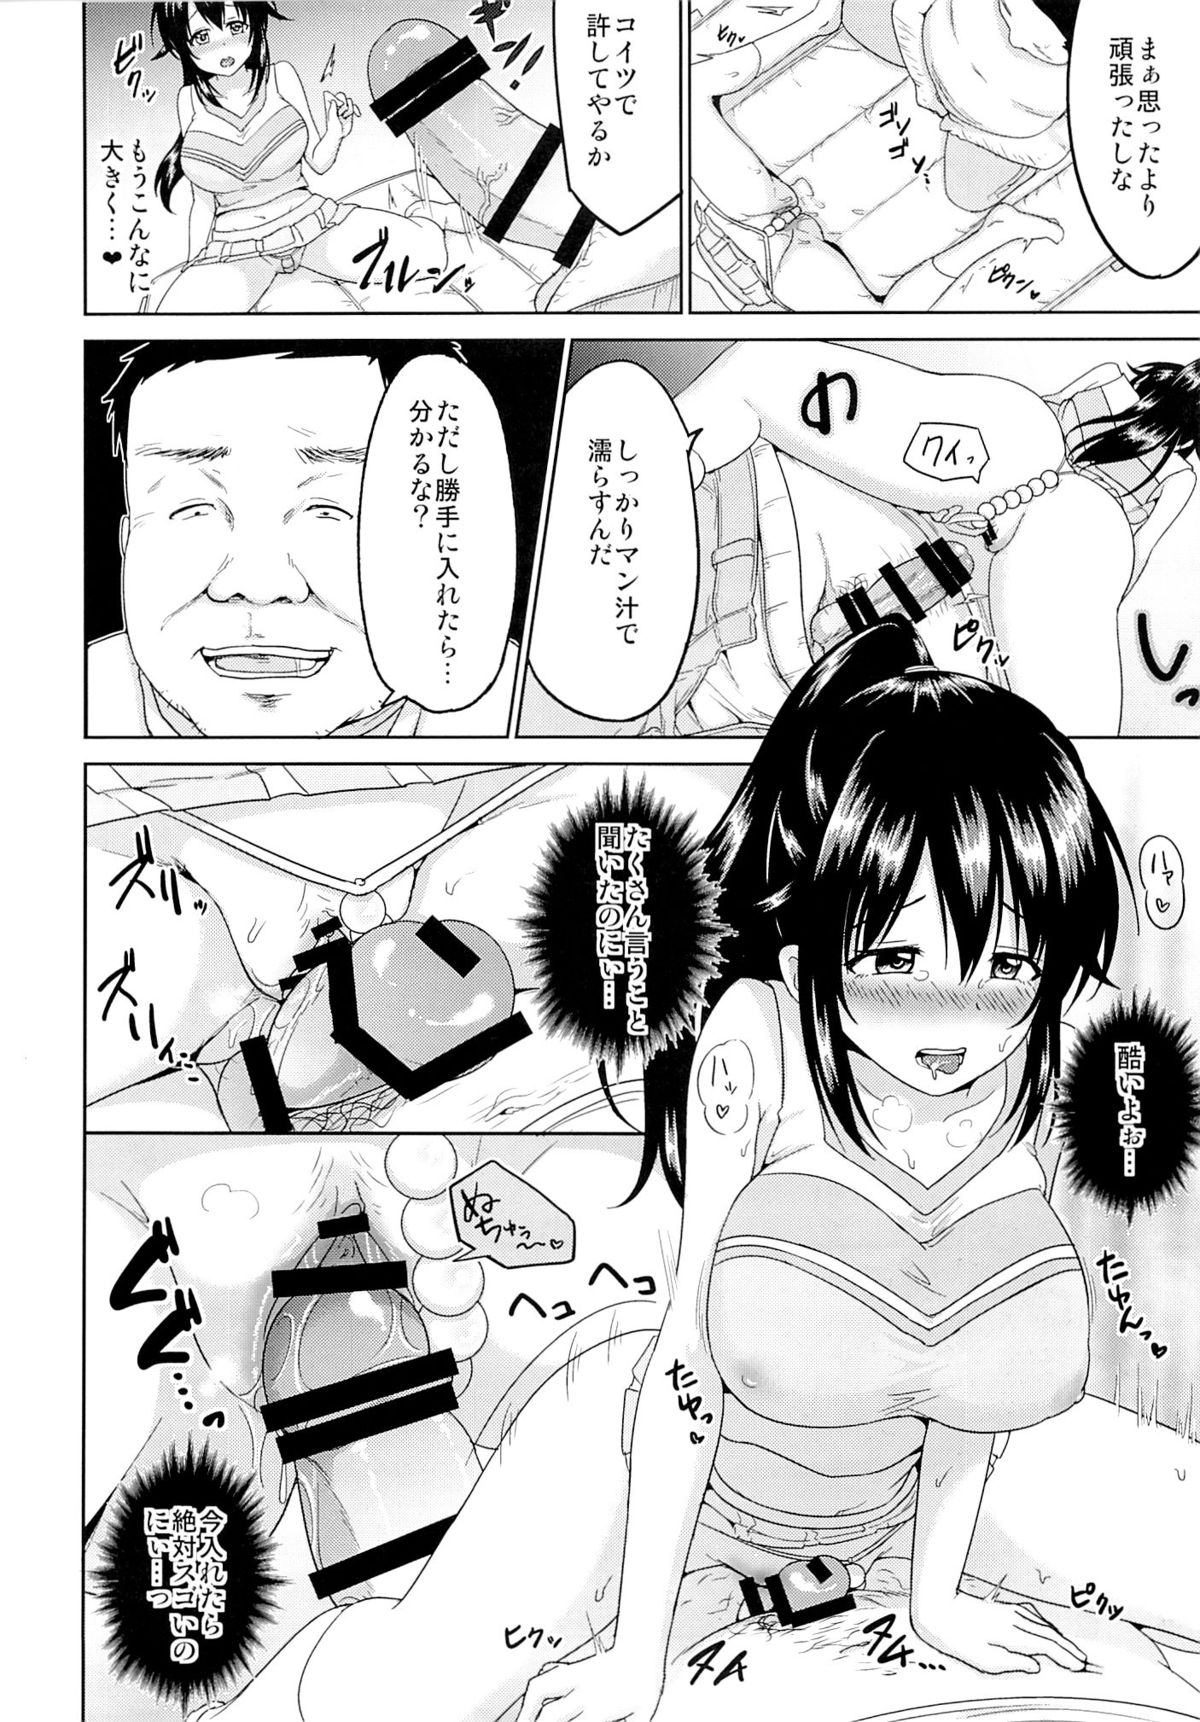 (C89) [Toitoikai (Toitoi)] Sachi-chan no Arbeit 3 page 17 full